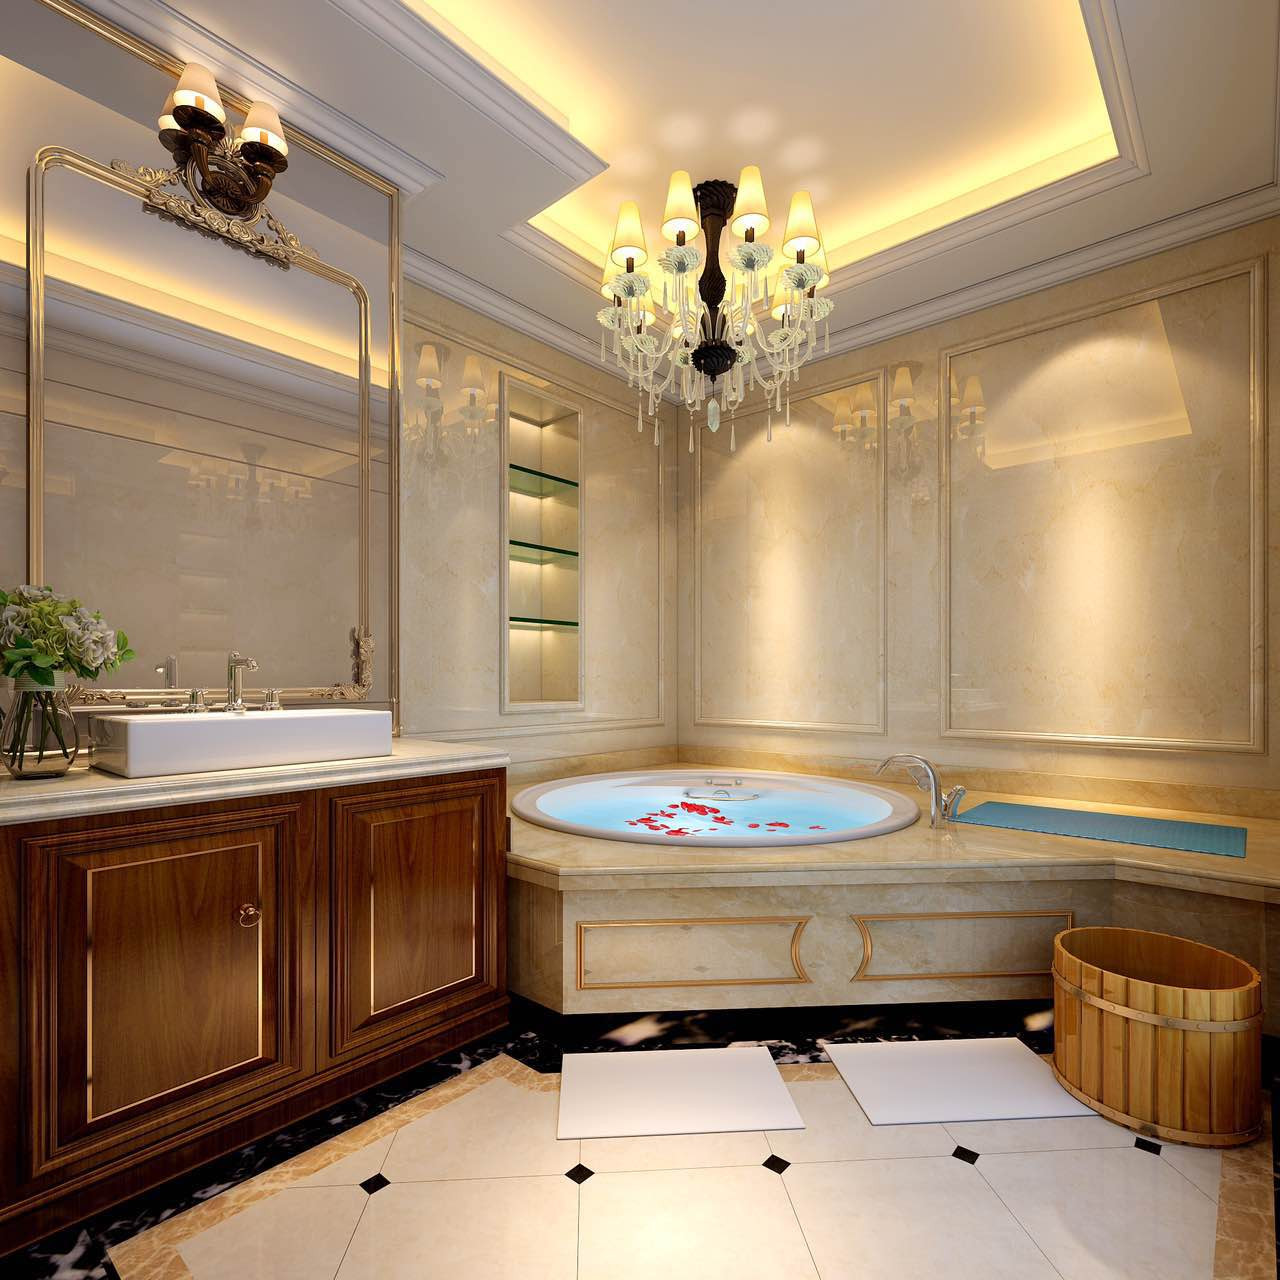 别墅装修,豪华型装修,140平米以上装修,卫生间,欧式风格,浴缸,暖色调